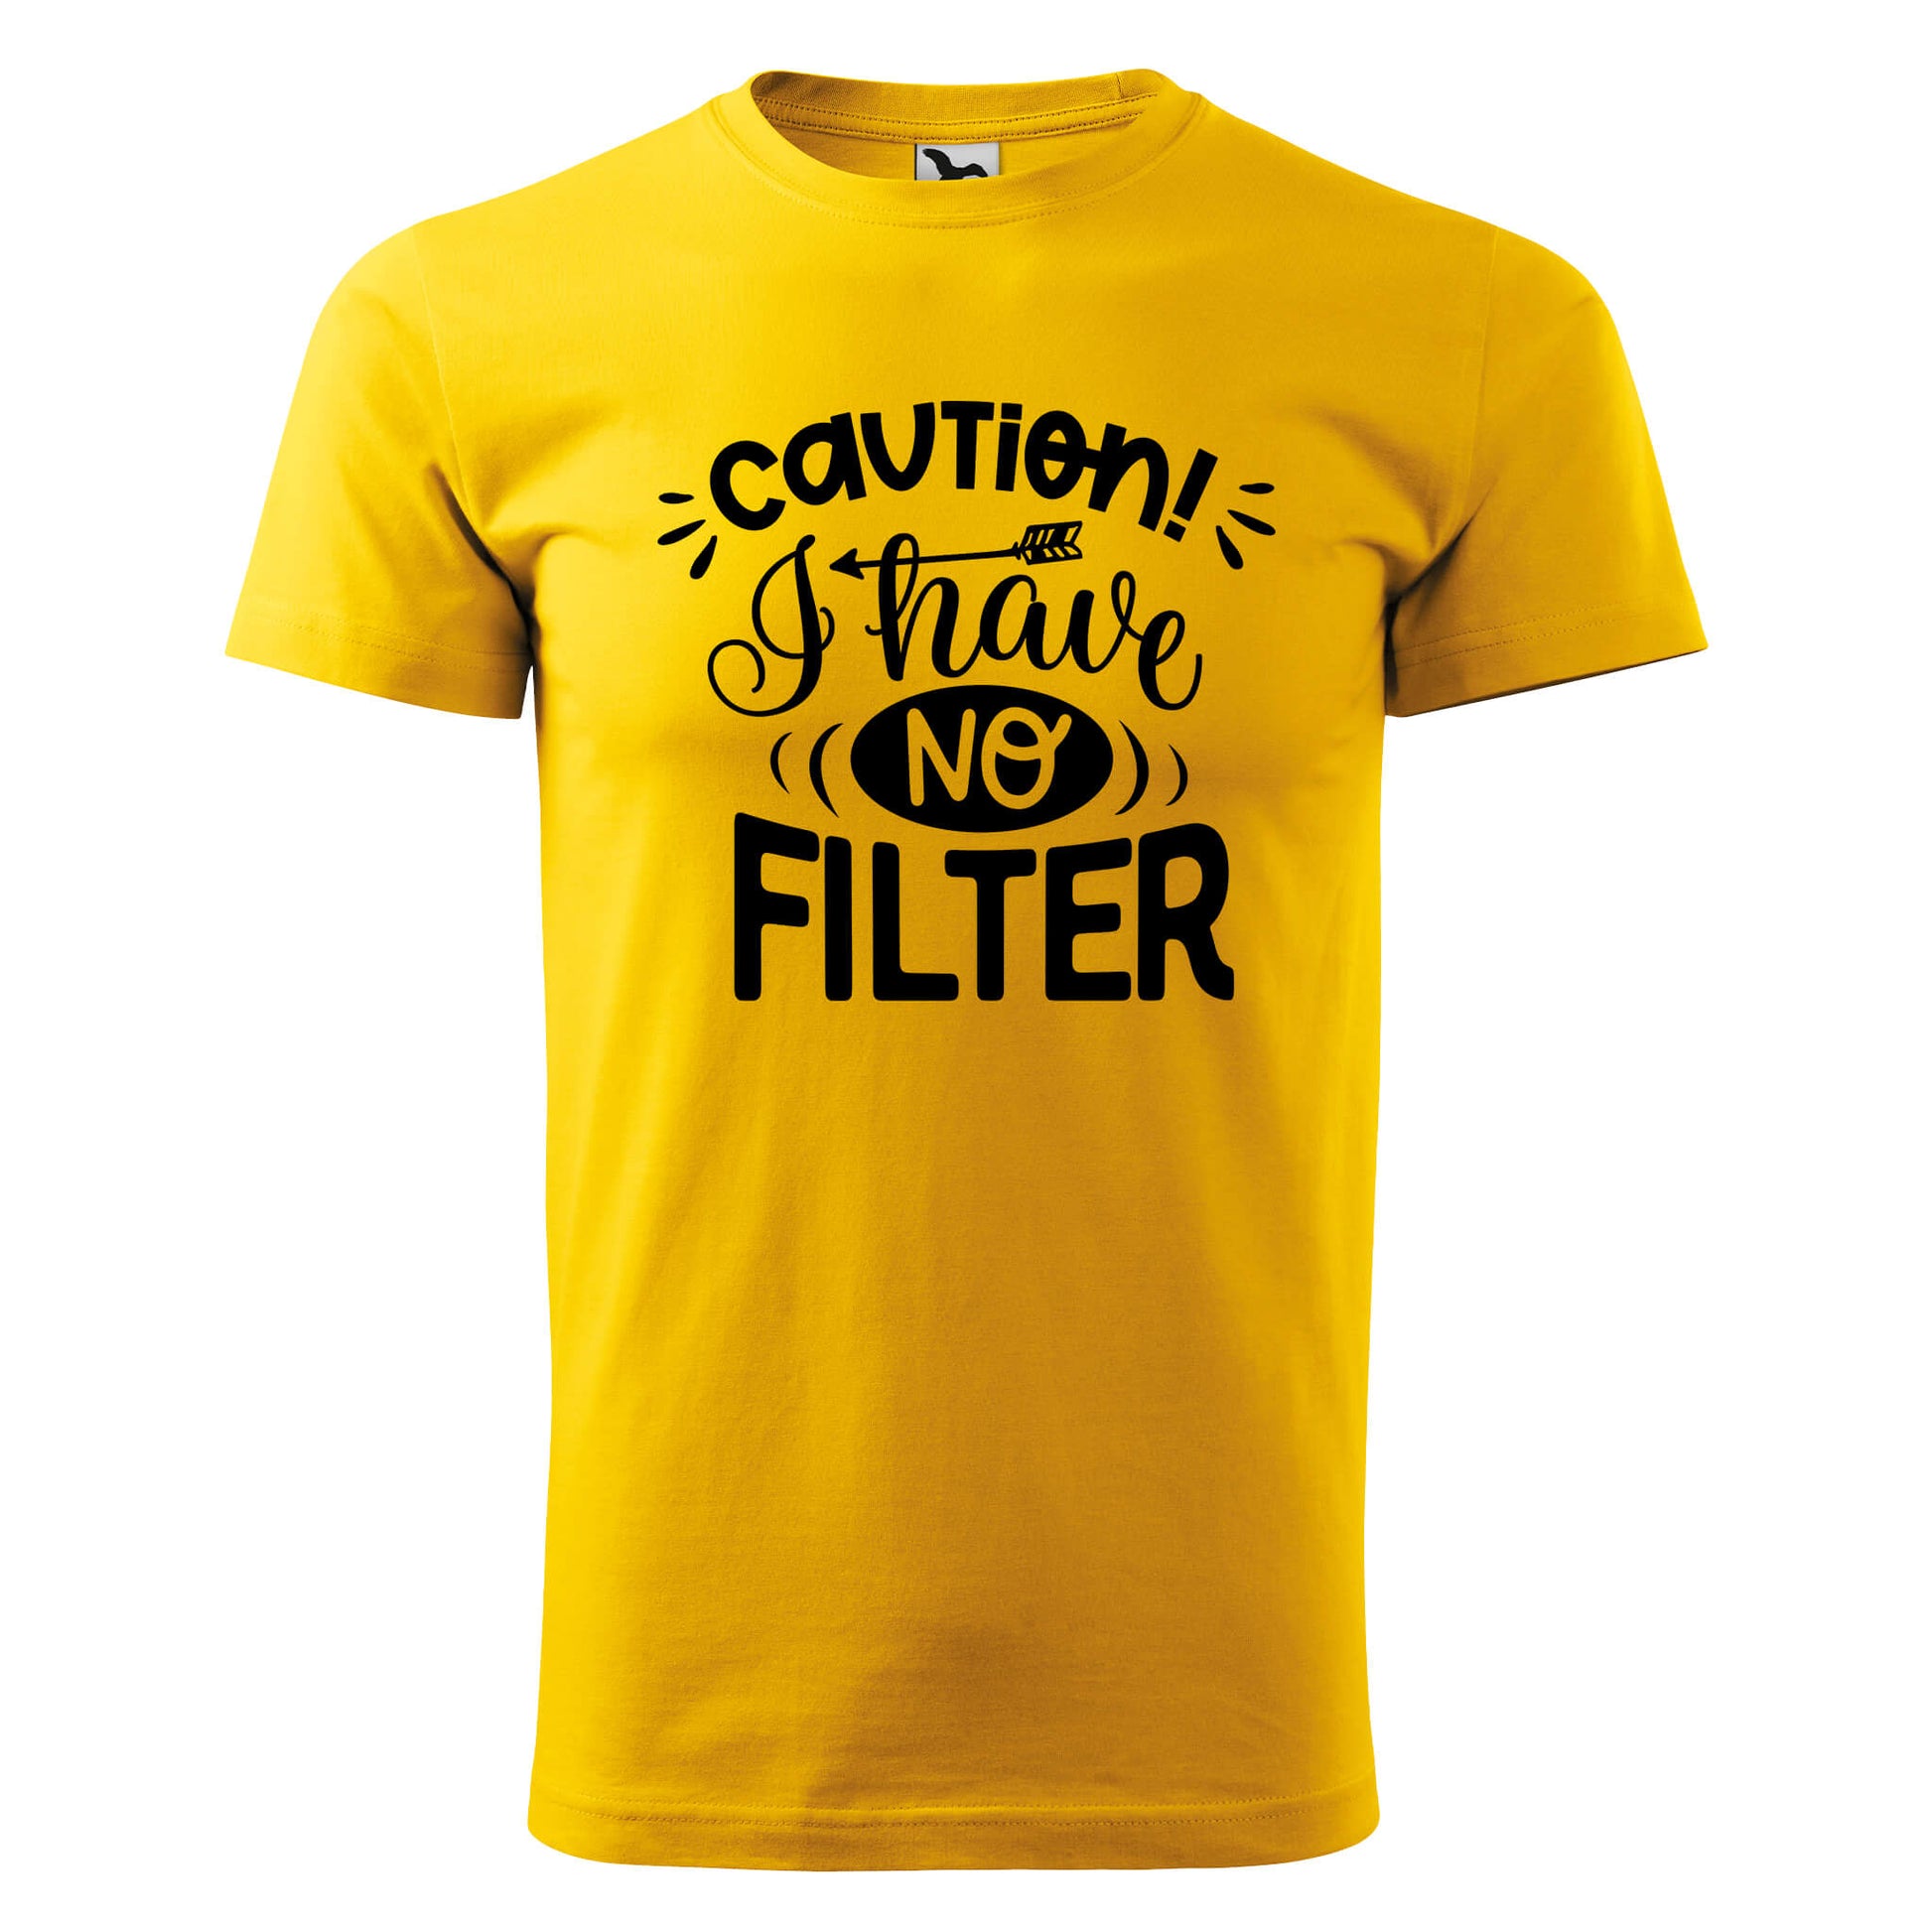 Caution no filter t-shirt - rvdesignprint